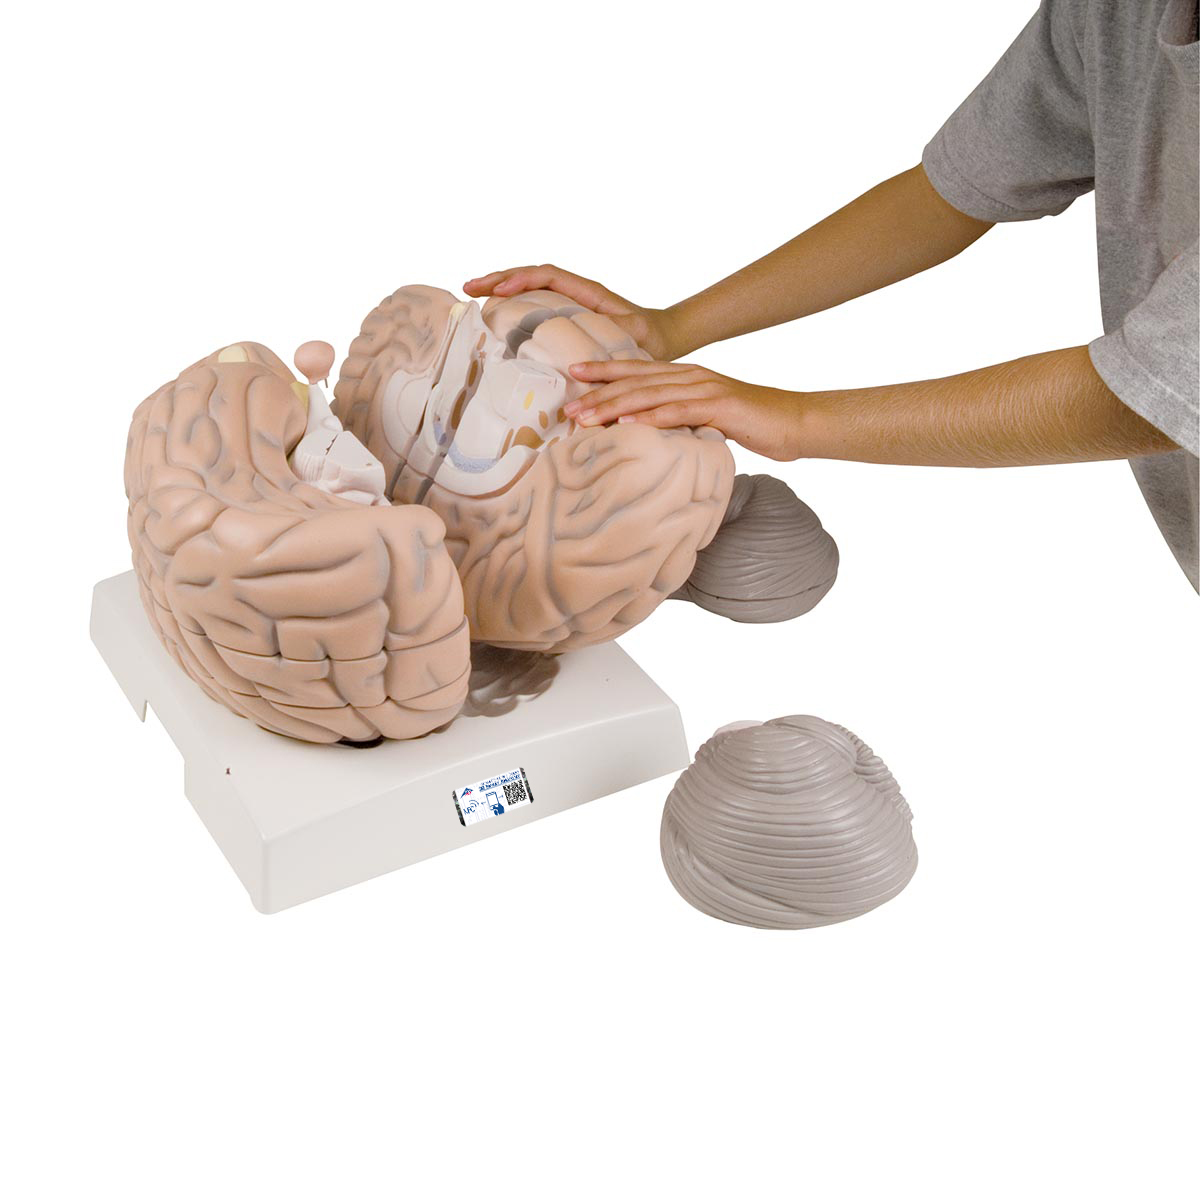 Mega-Gehirnmodell,2,5-fache Größe, 14-teilig - 3B Smart Anatomy, Bestellnummer 1001261, VH409, 3B Scientific